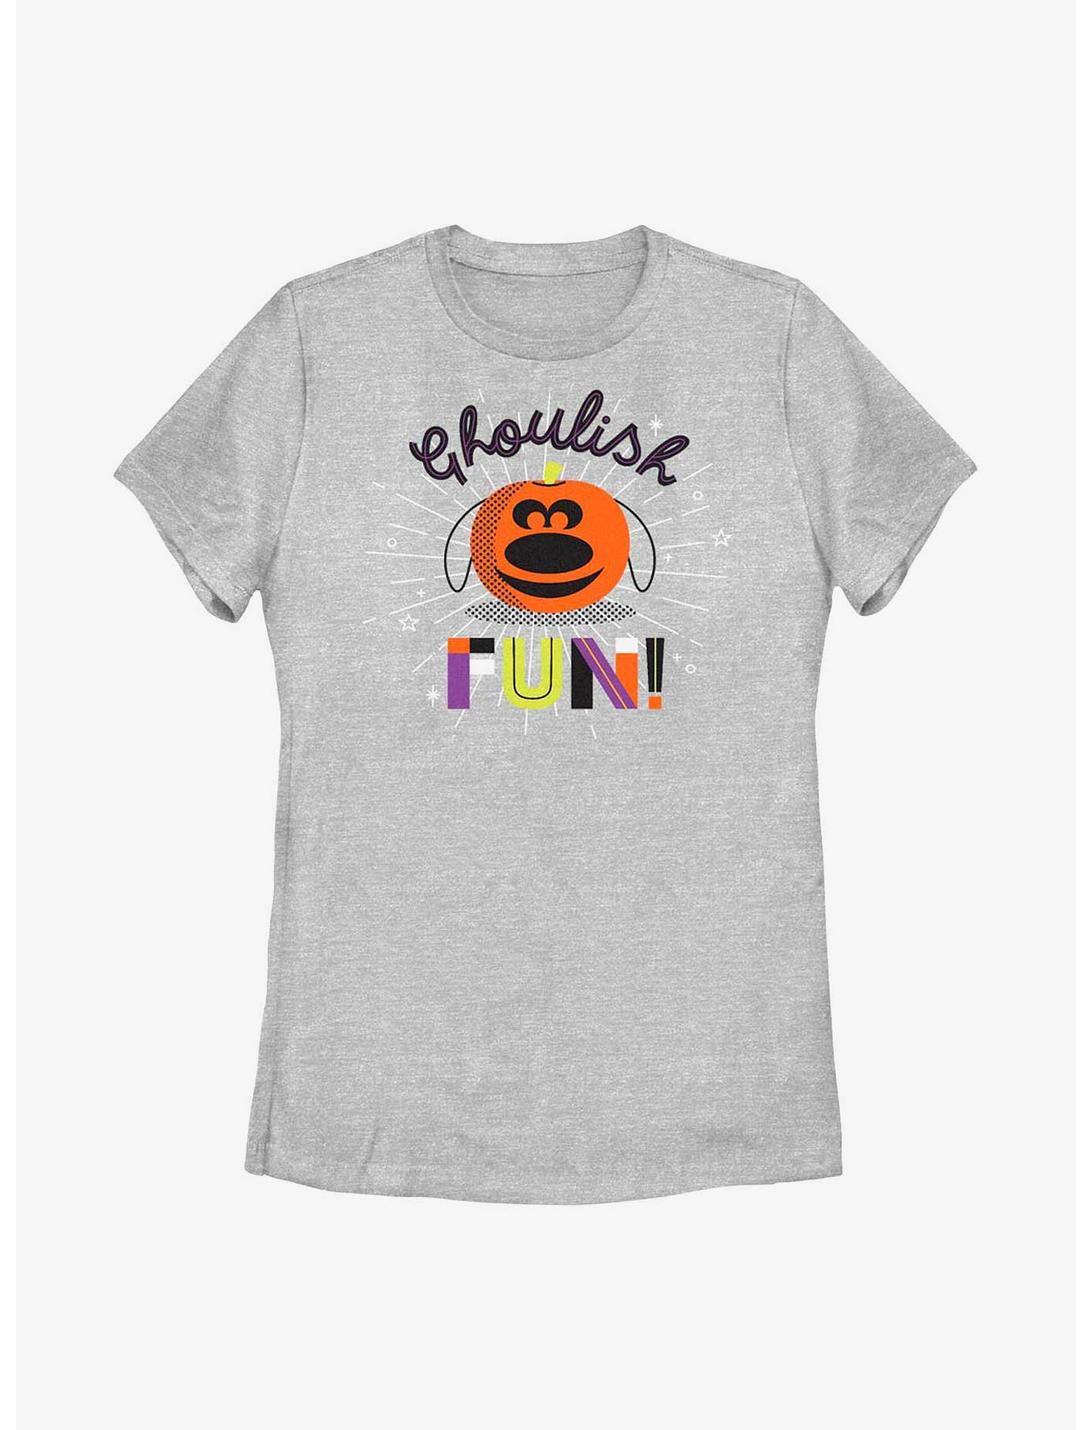 Disney Pixar Up Dug's Ghoulish Fun! Womens T-Shirt, ATH HTR, hi-res